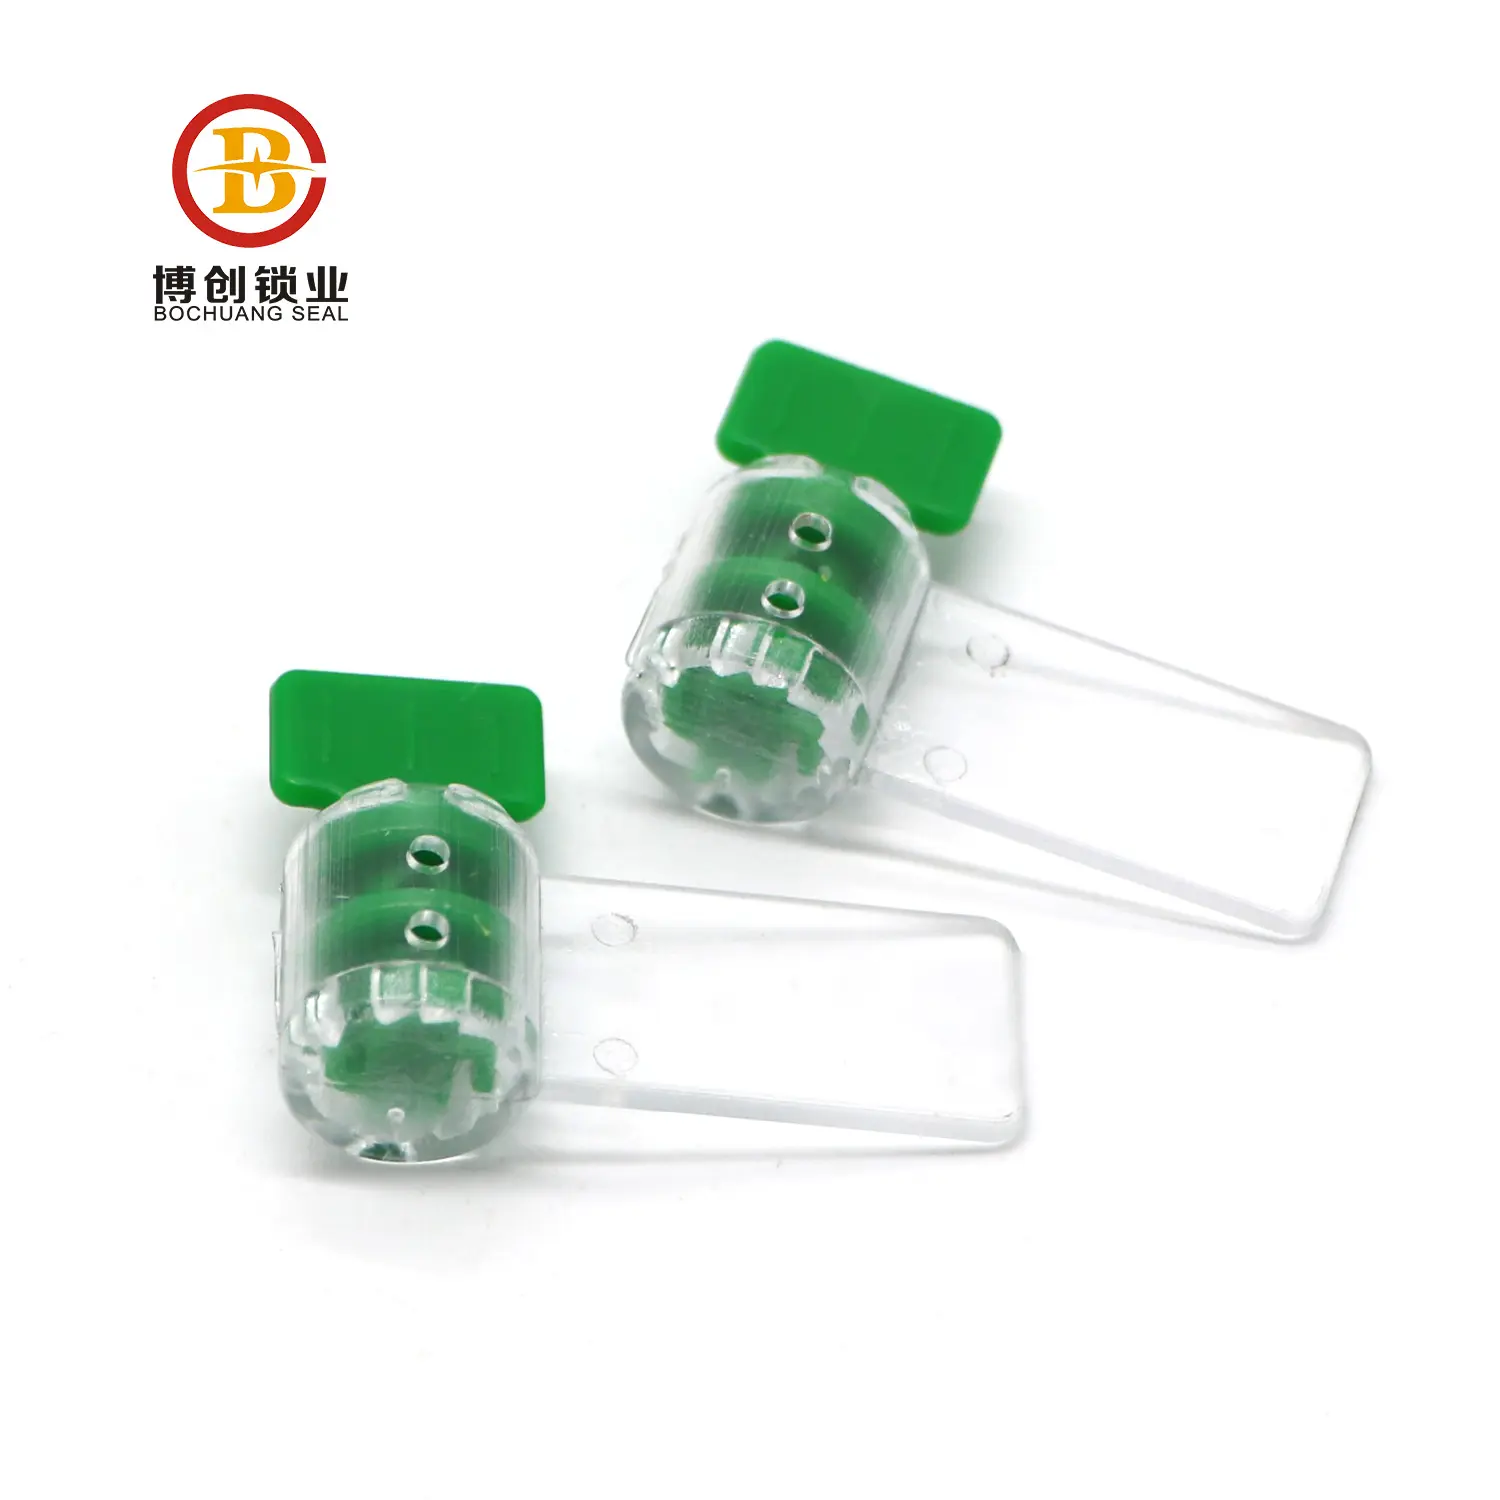 Selador de plástico para medidor elétrico bcm104, selos de cobre para medidor elétrico de segurança